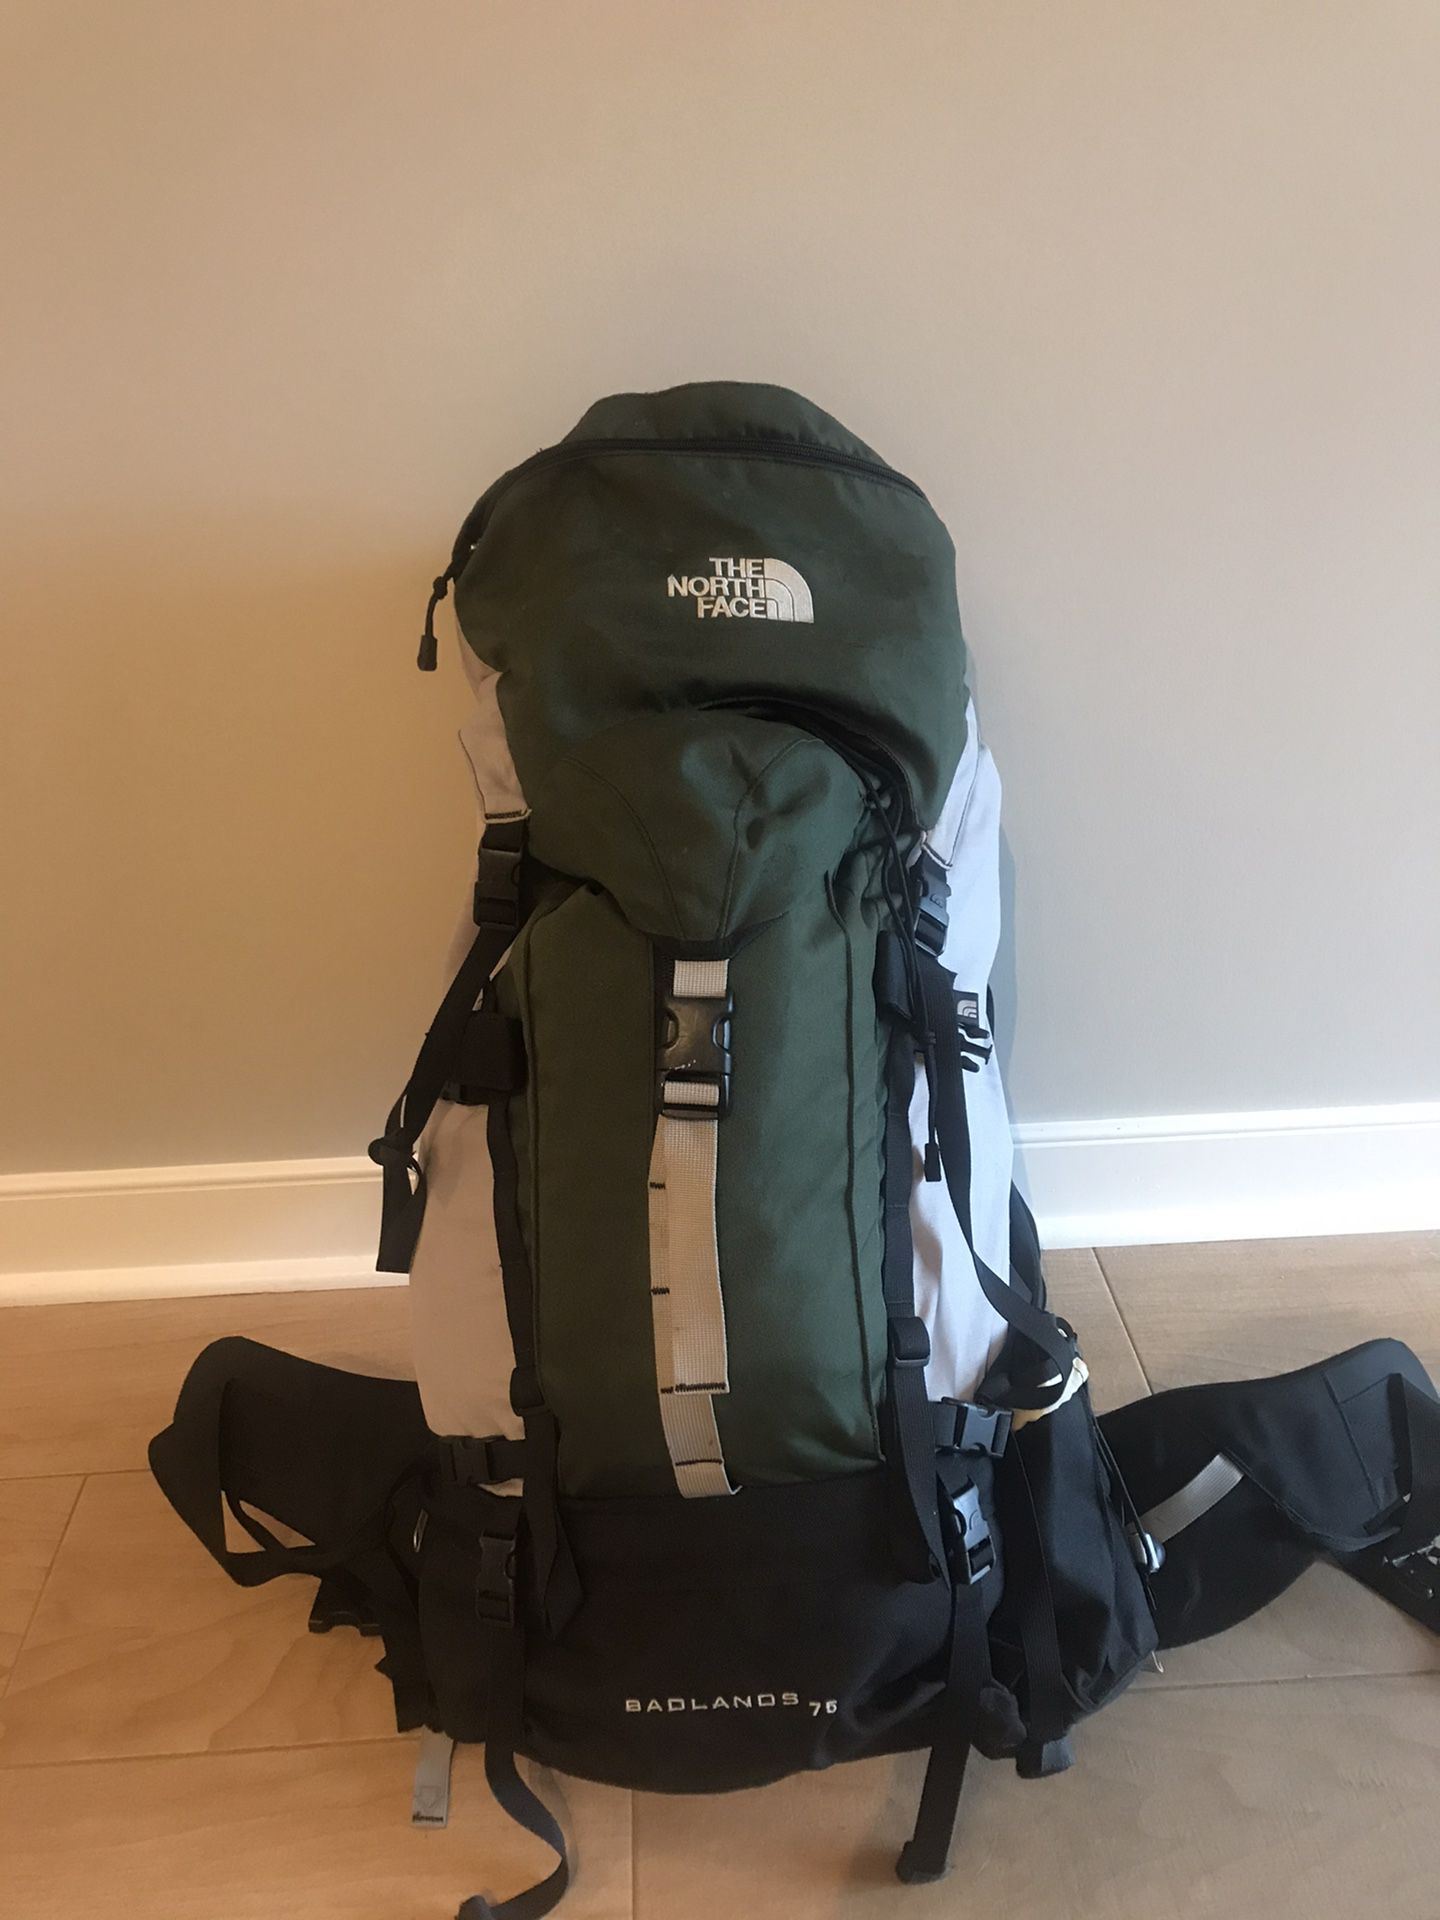 The North Face Badlands 75L Backpack